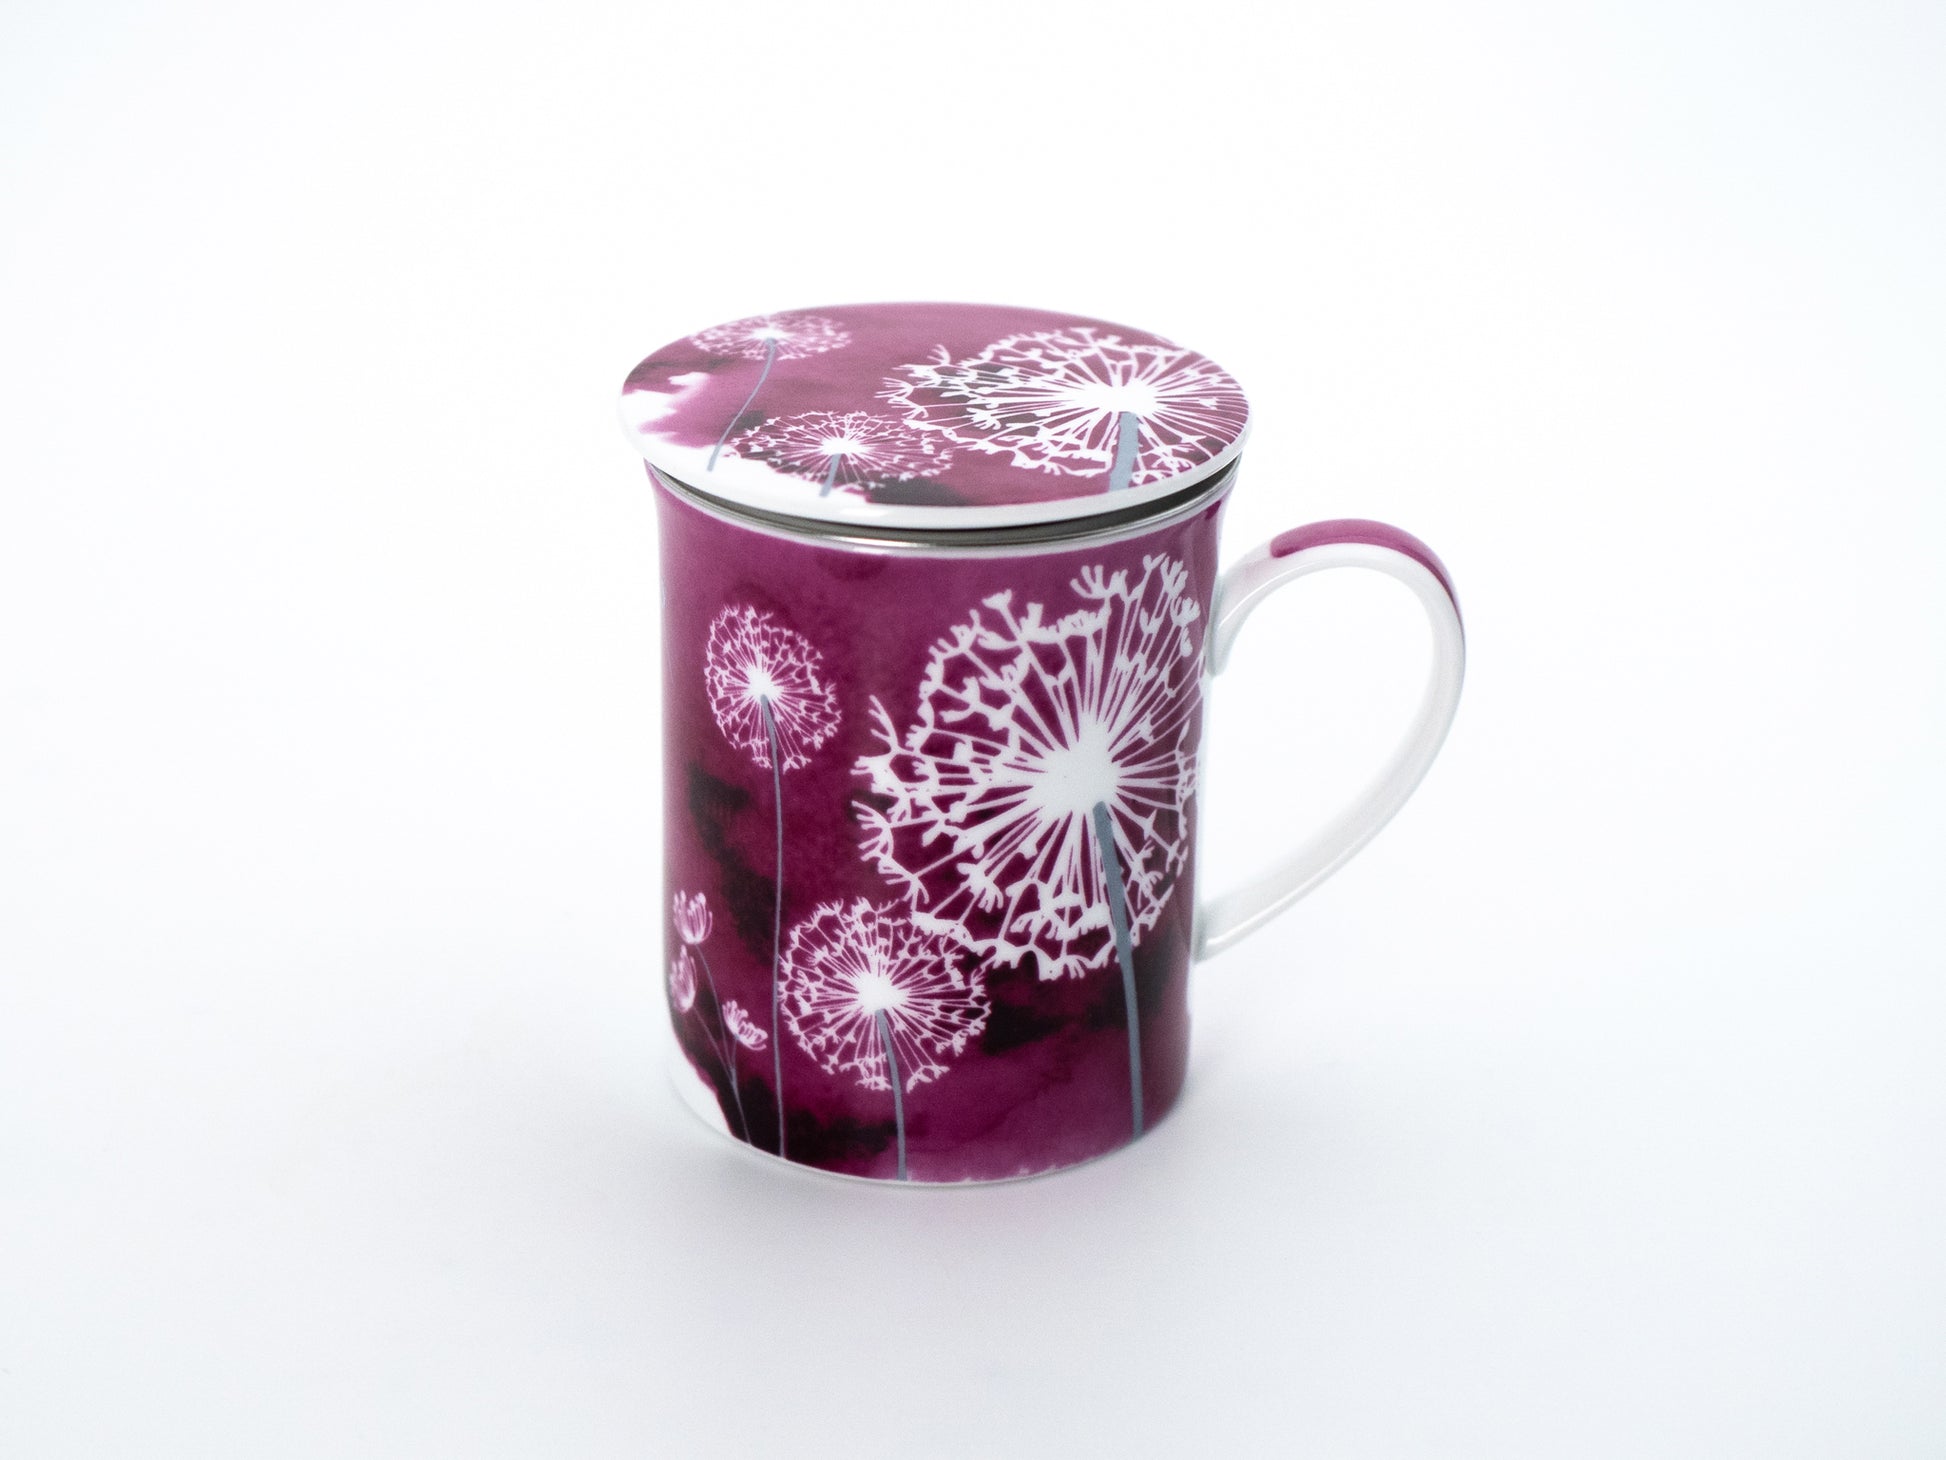 Pink dandelion porcelain infuser mug and lid